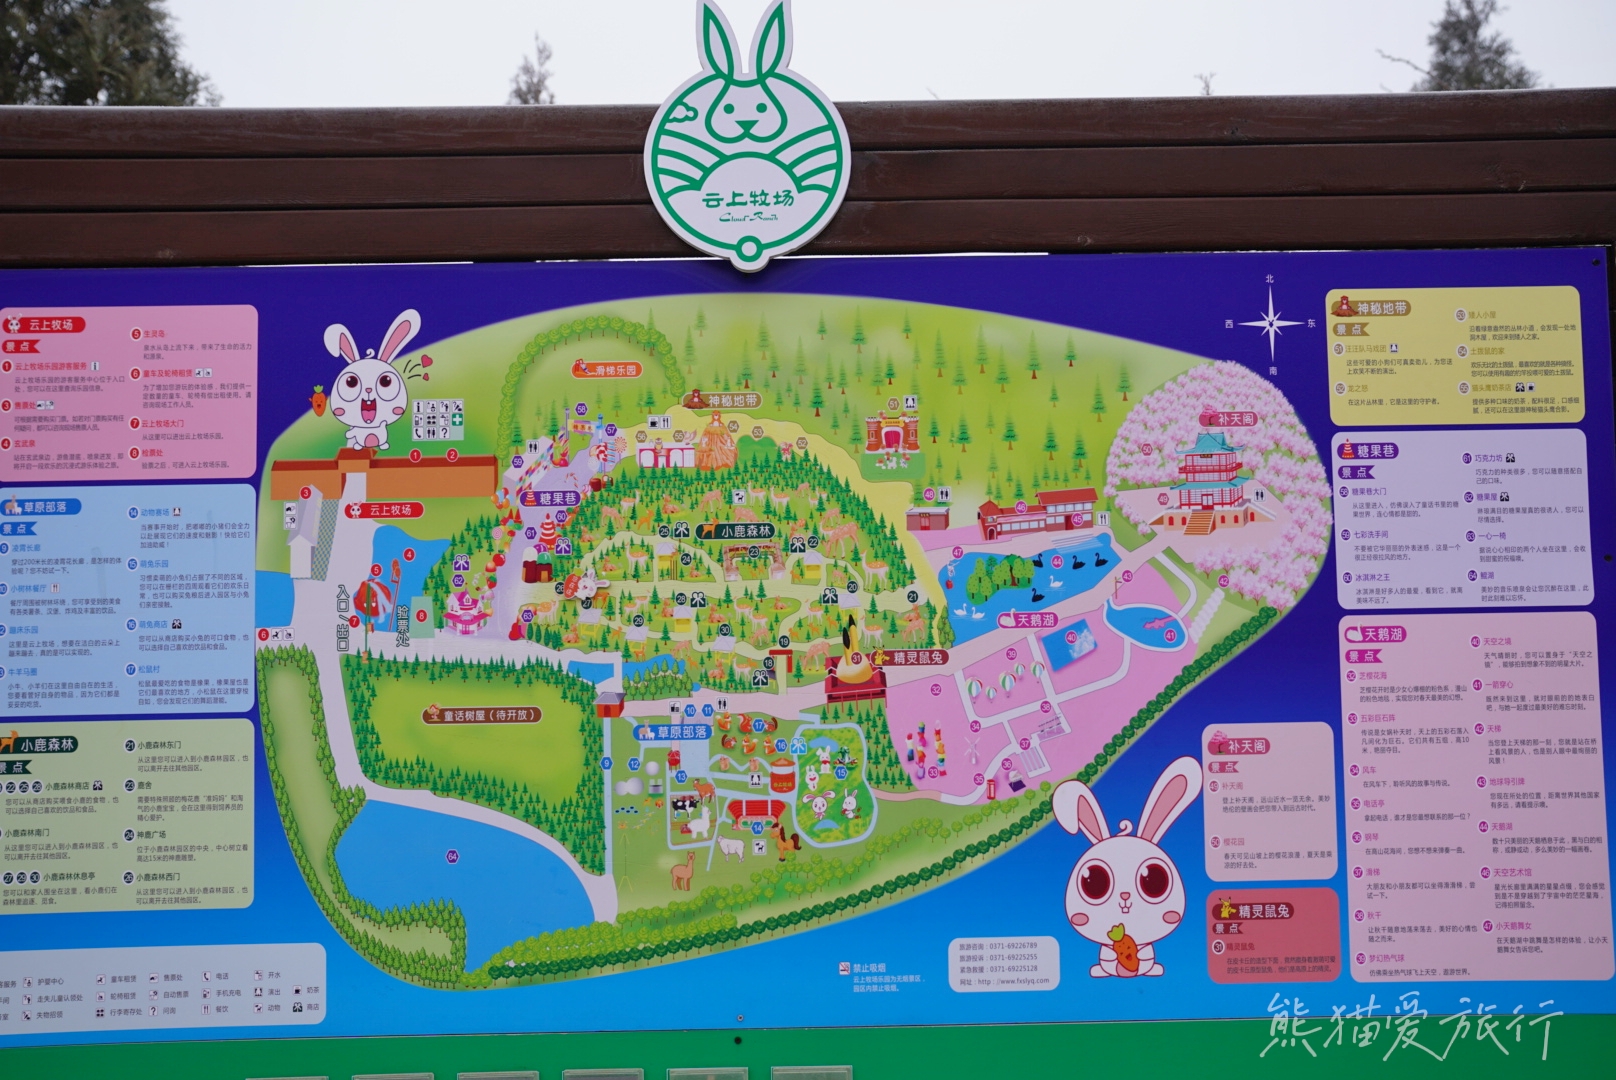 跨年春节遛娃好去处，郑州伏羲山云上牧场喂小鹿嗨玩冰雪